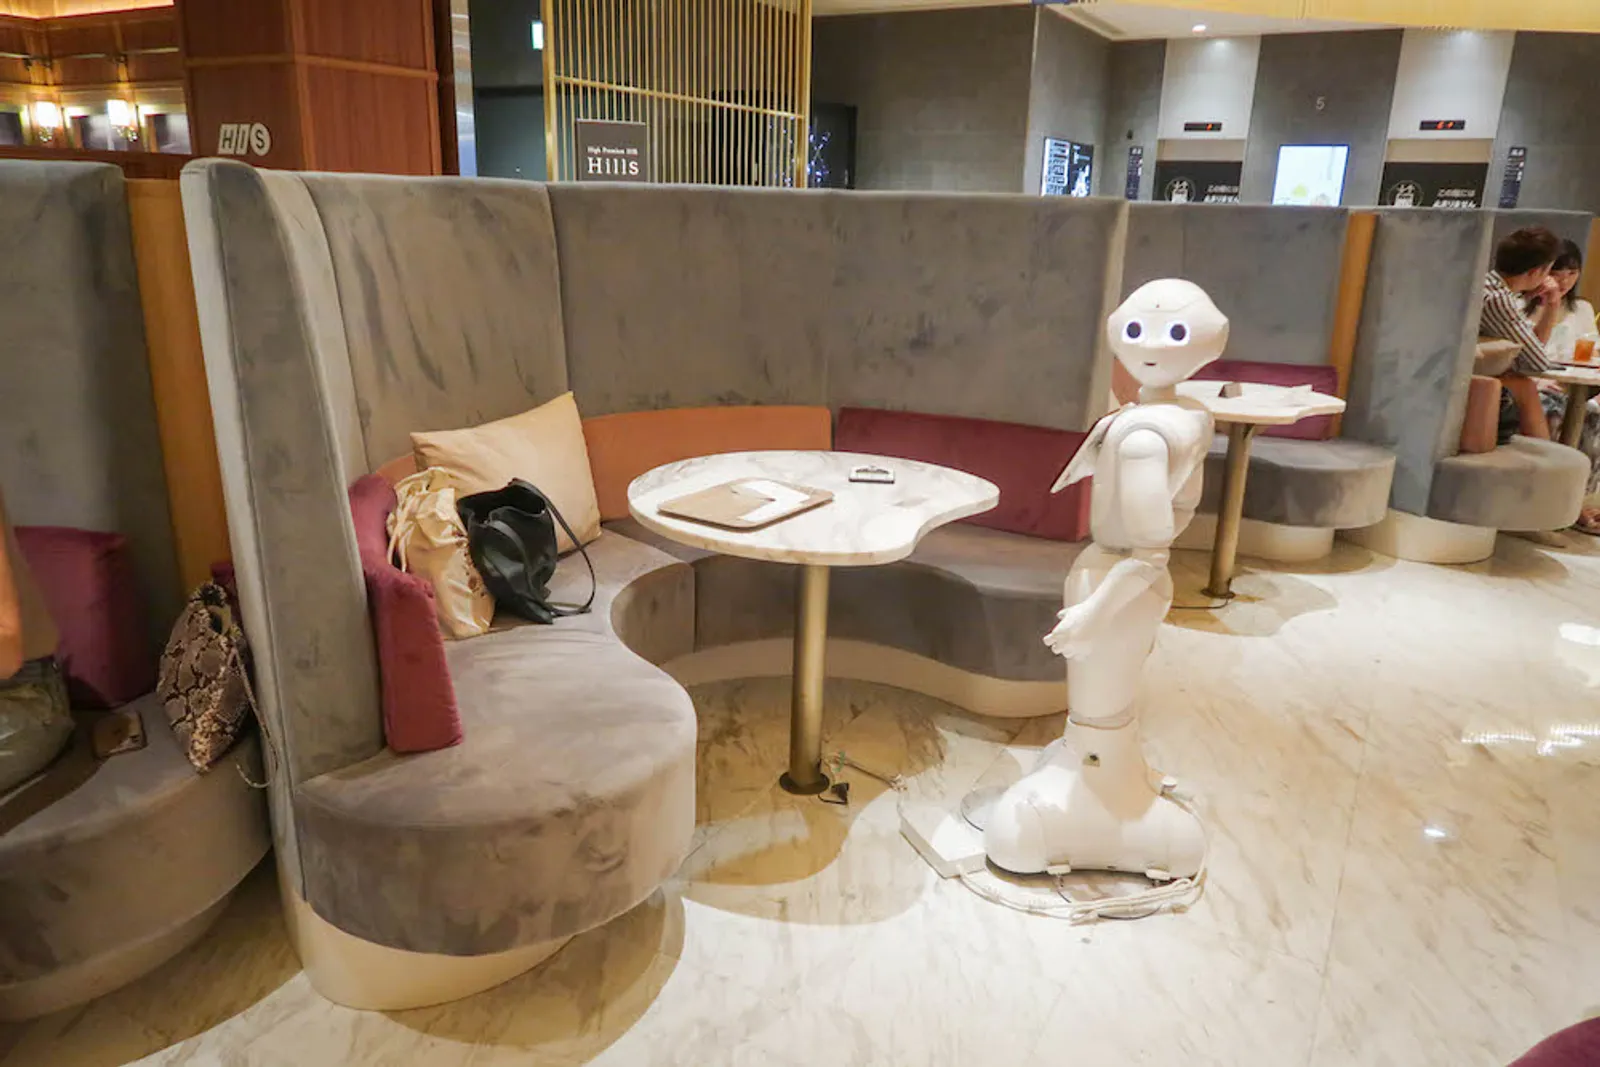 Pepper PARLOR, Kafe dengan Robot sebagai Pelayannya